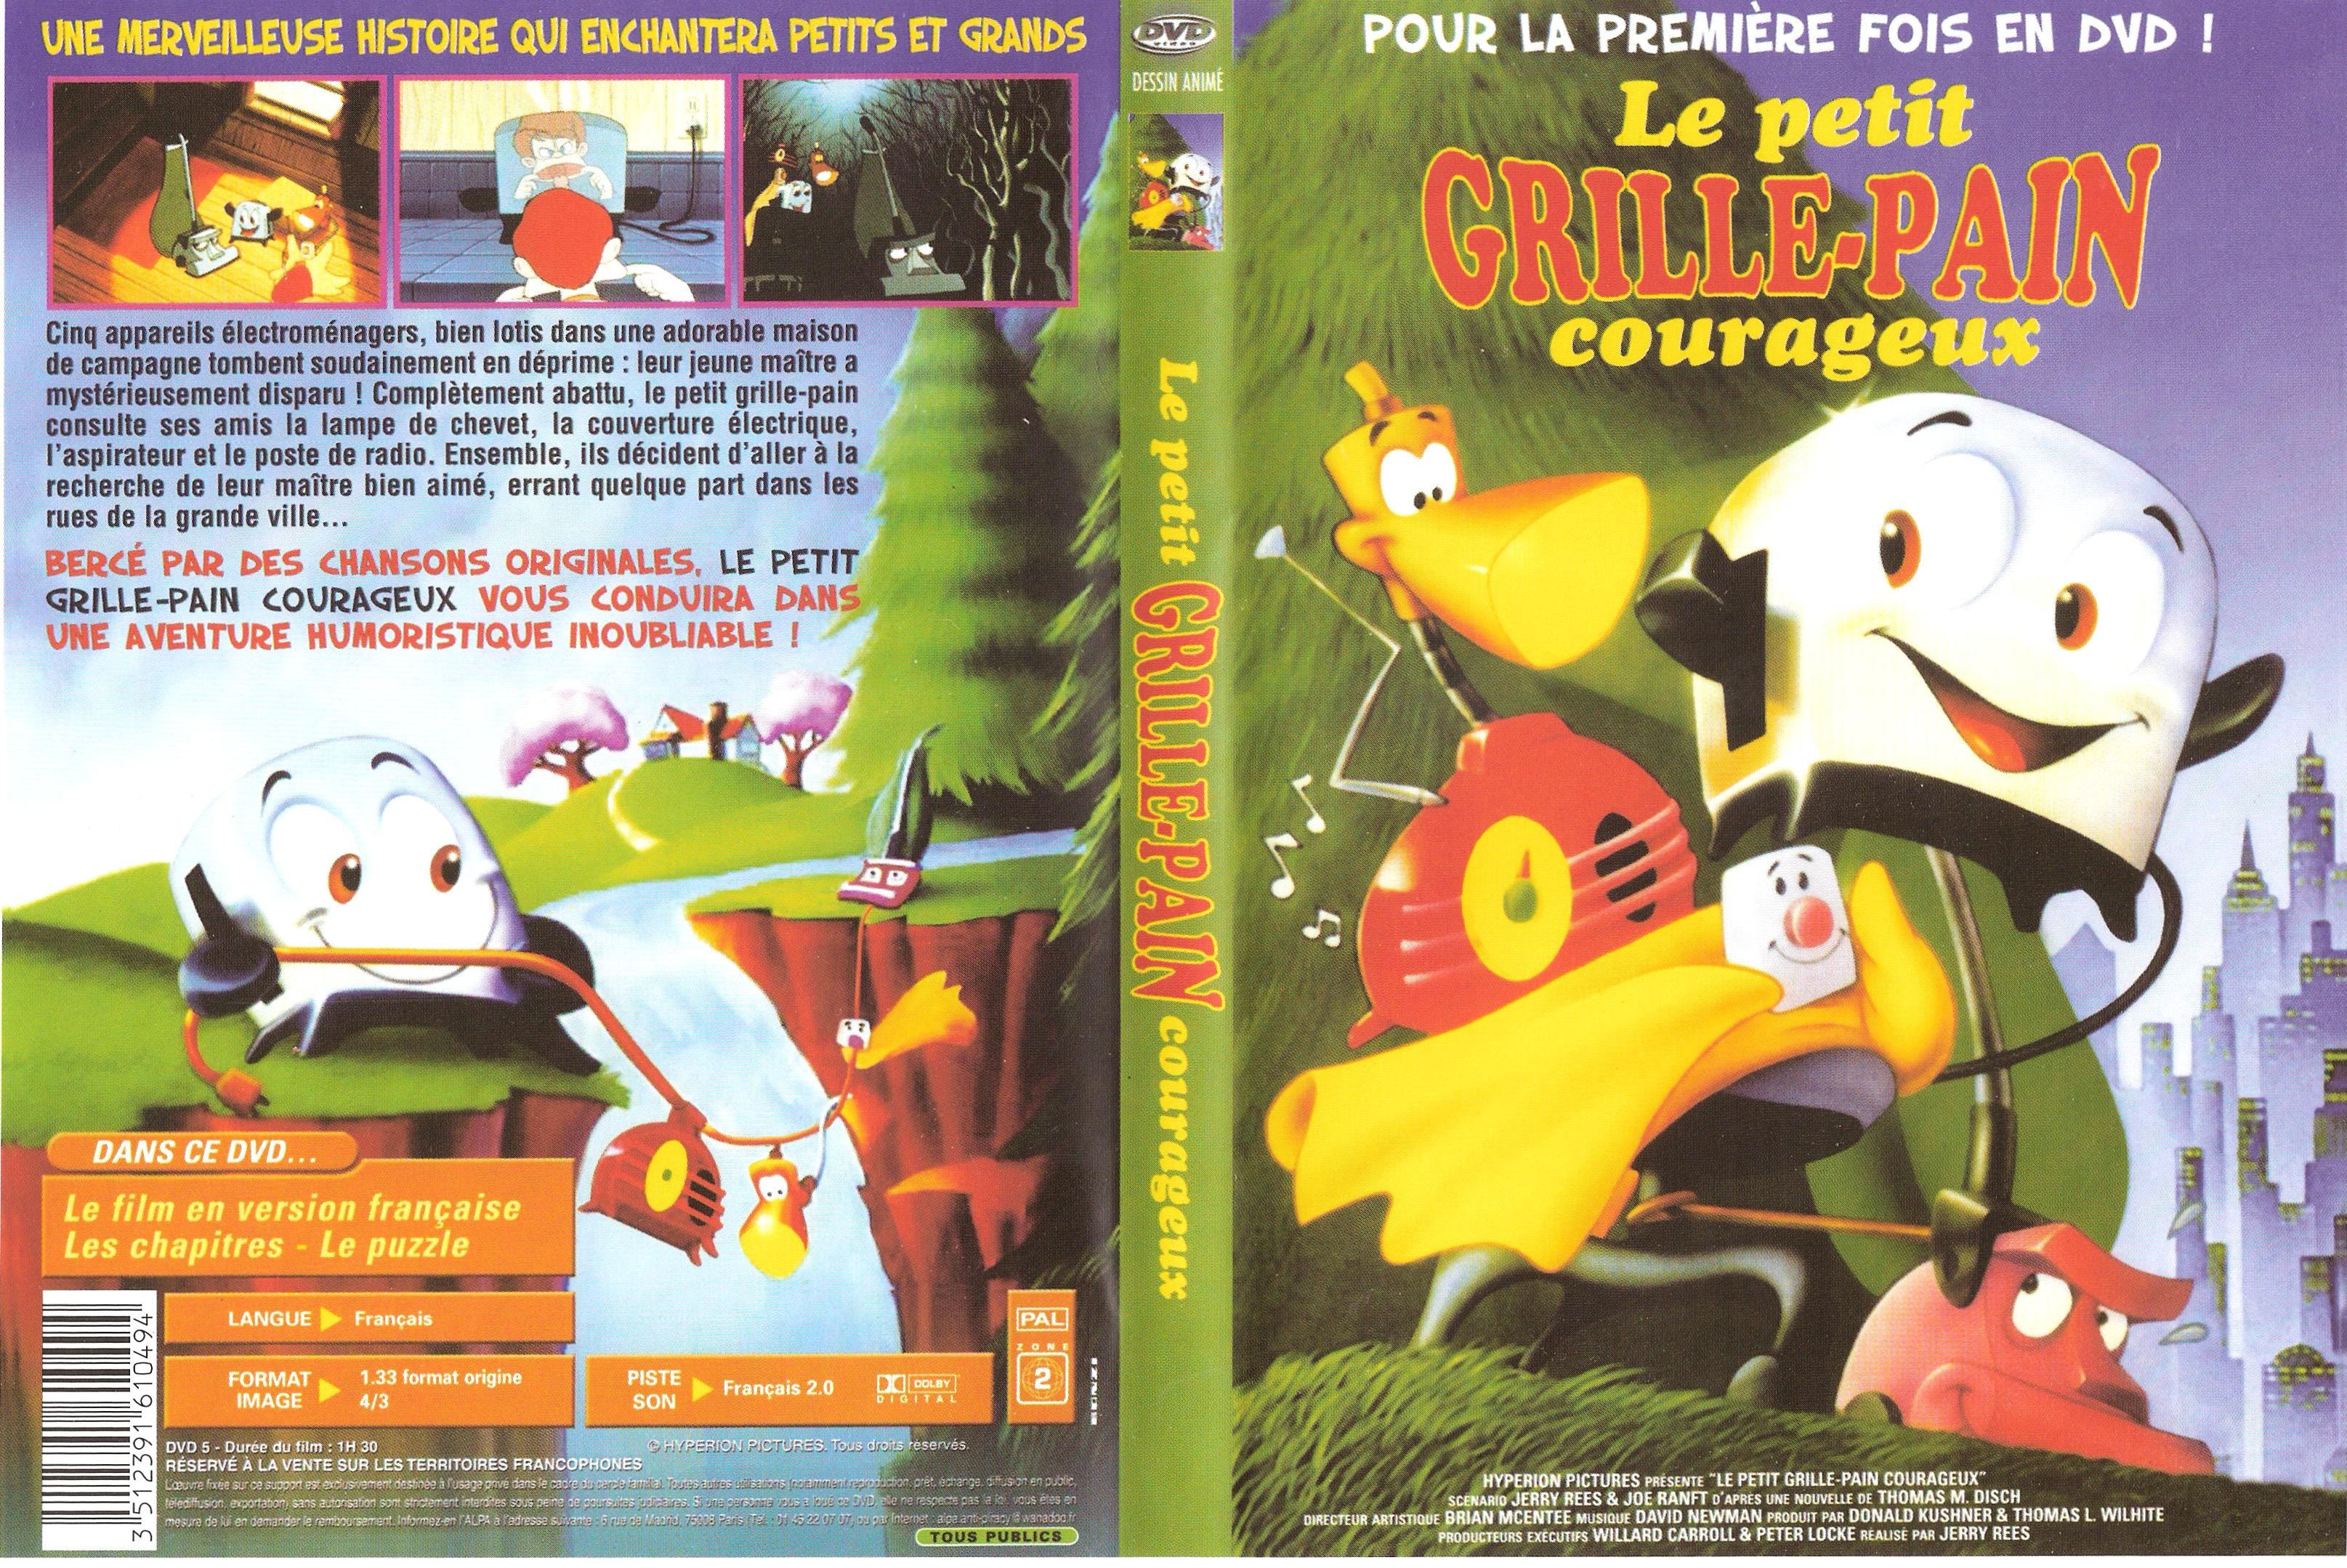 Jaquette DVD Le petit grille-pain courageux